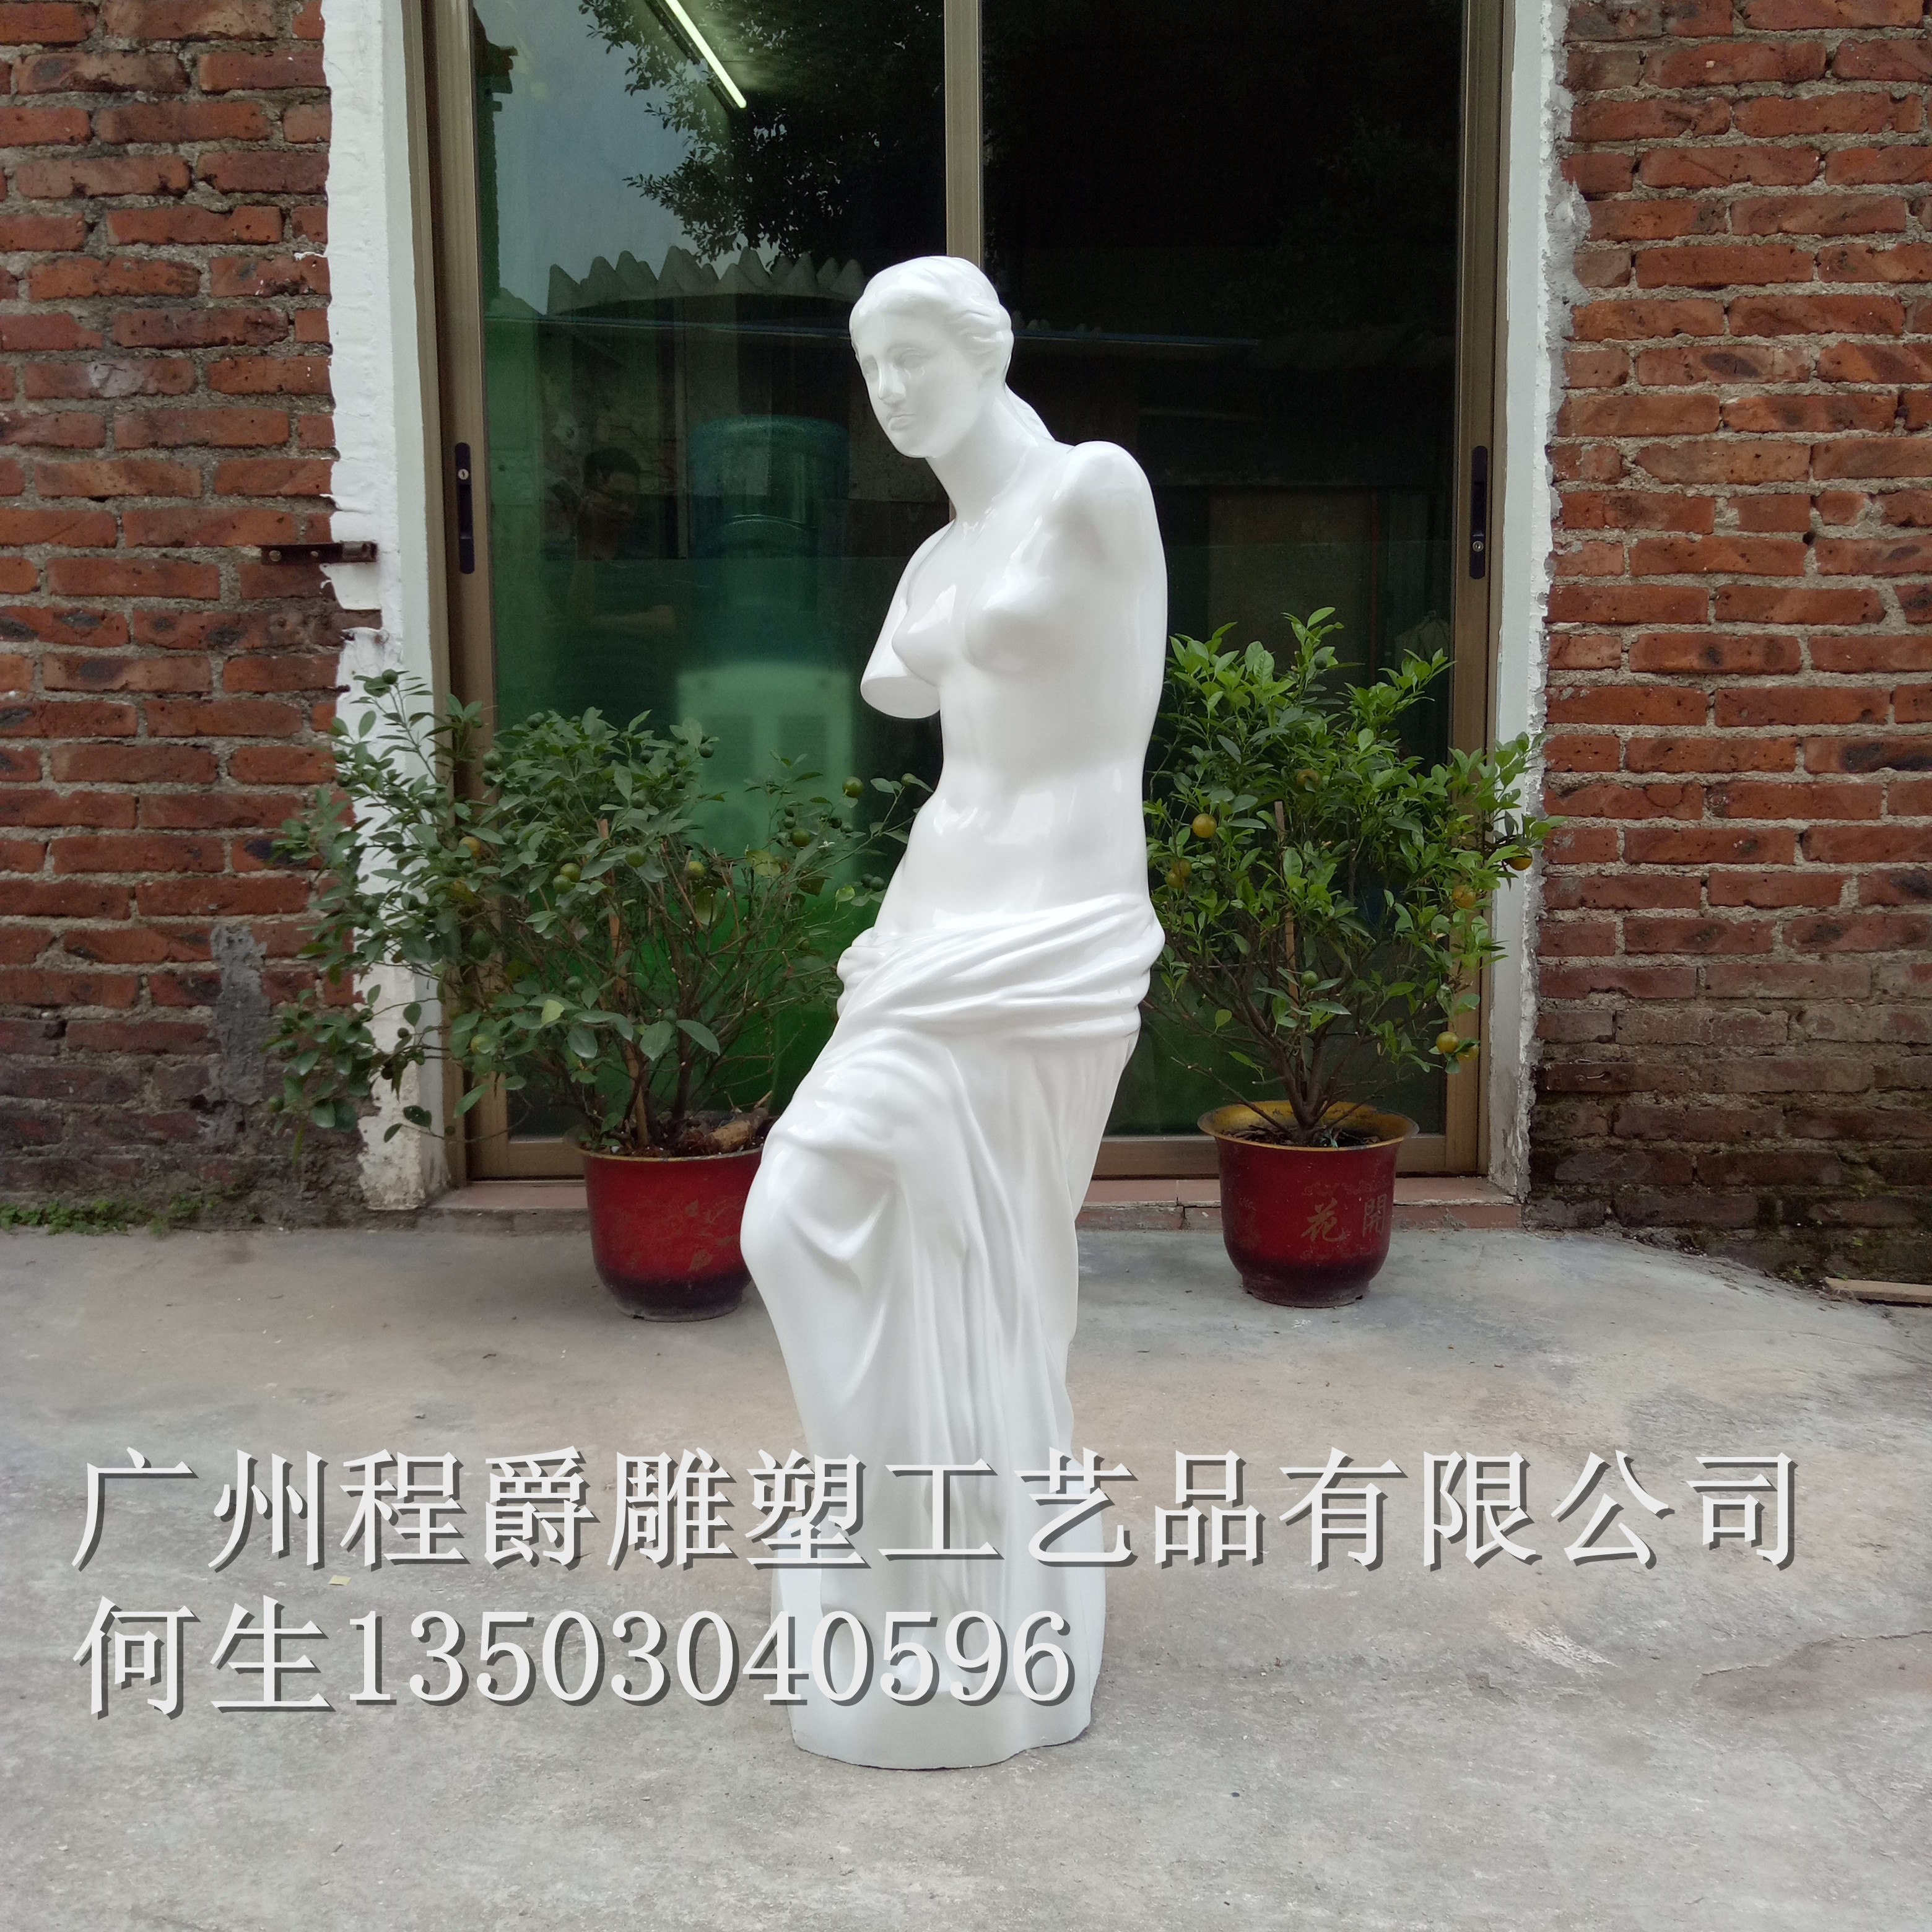 广州市玻璃钢断臂维纳斯雕塑像厂家广东人物雕塑 玻璃钢断臂维纳斯雕塑像厂家批发